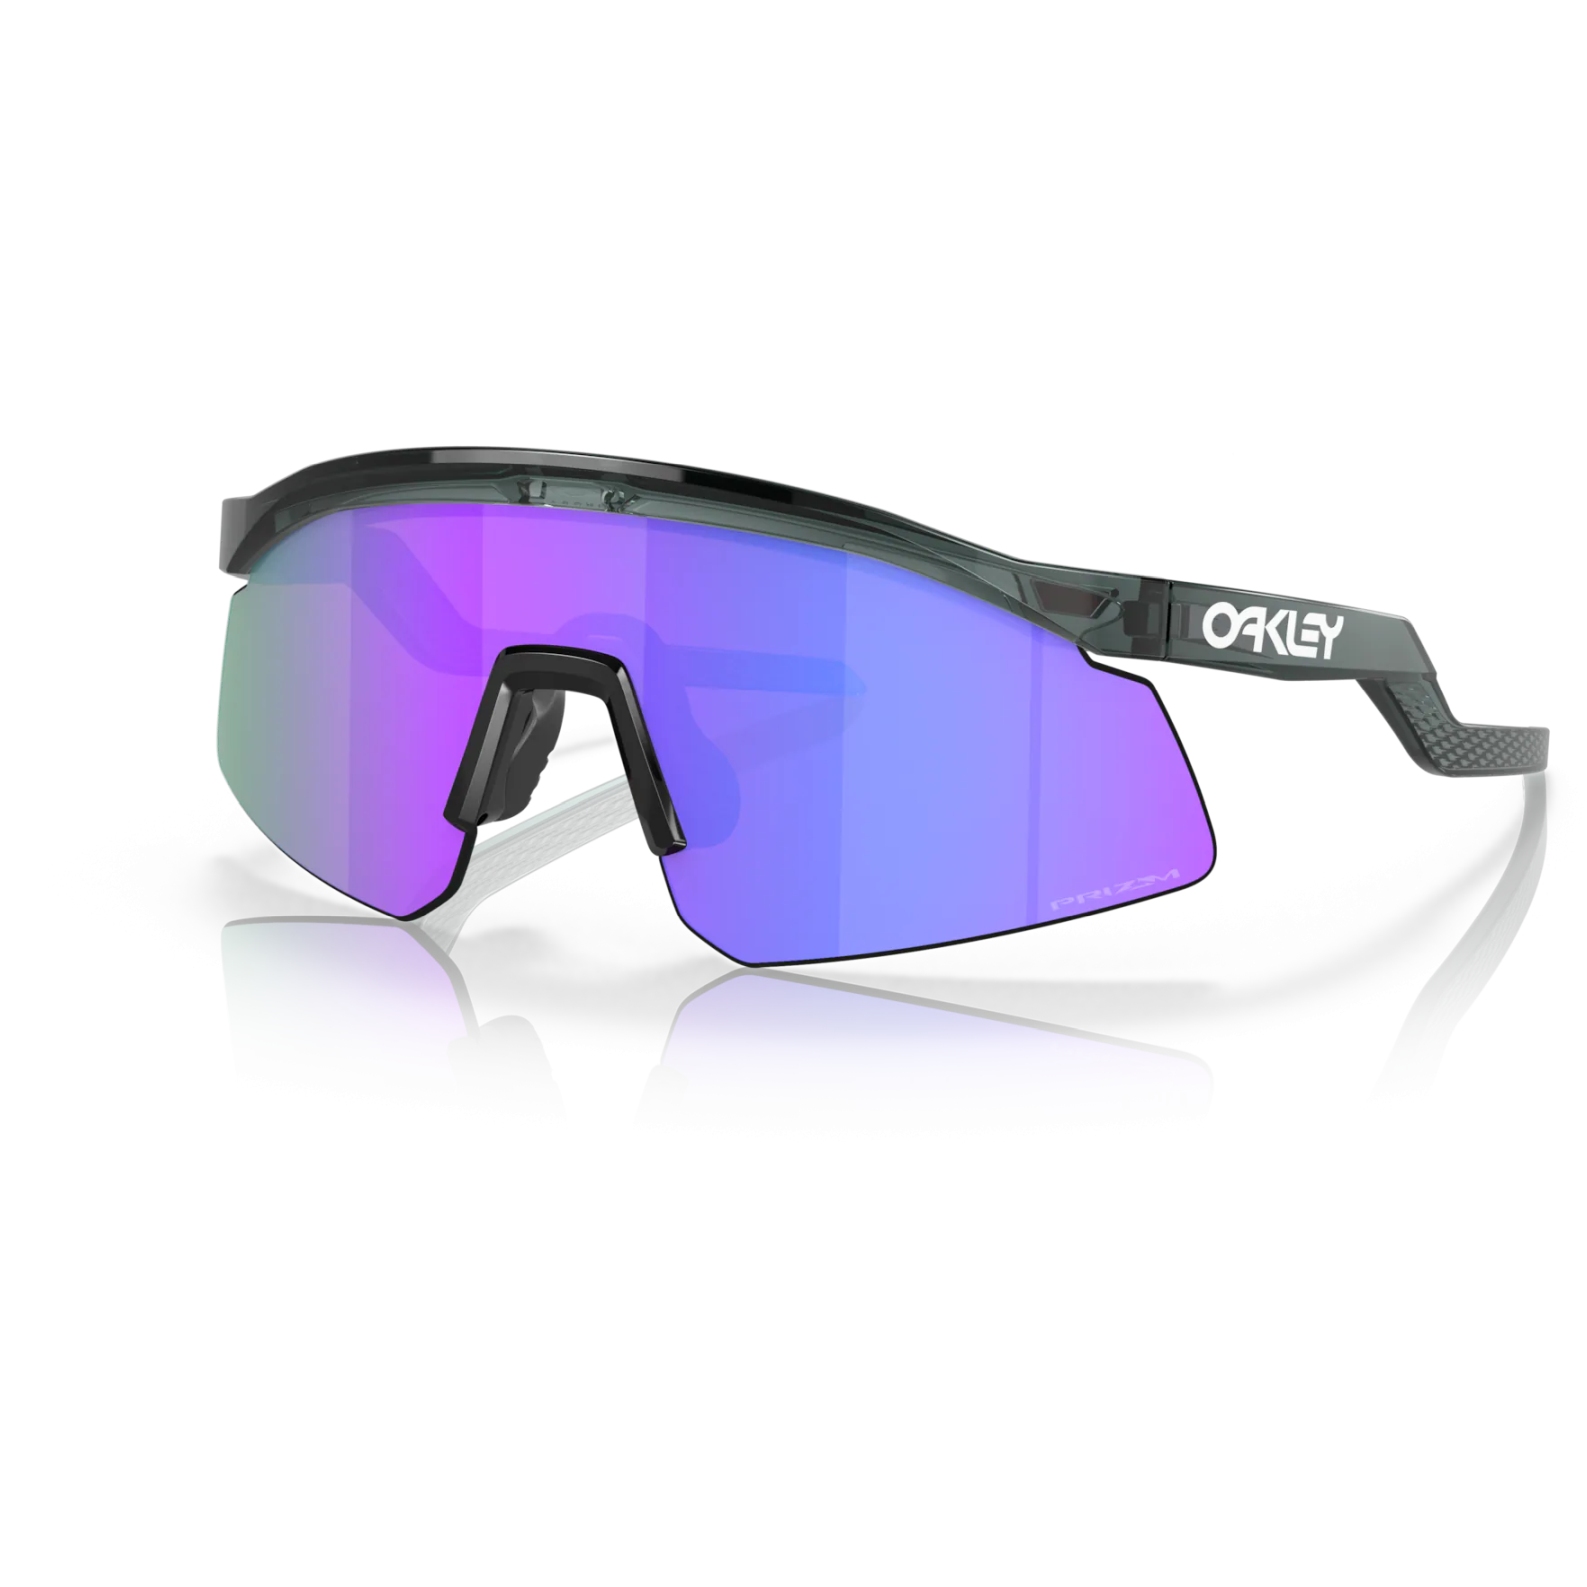 Productfoto van Oakley Hydra Bril - Crystal Black/Prizm Violet - OO9229-0437